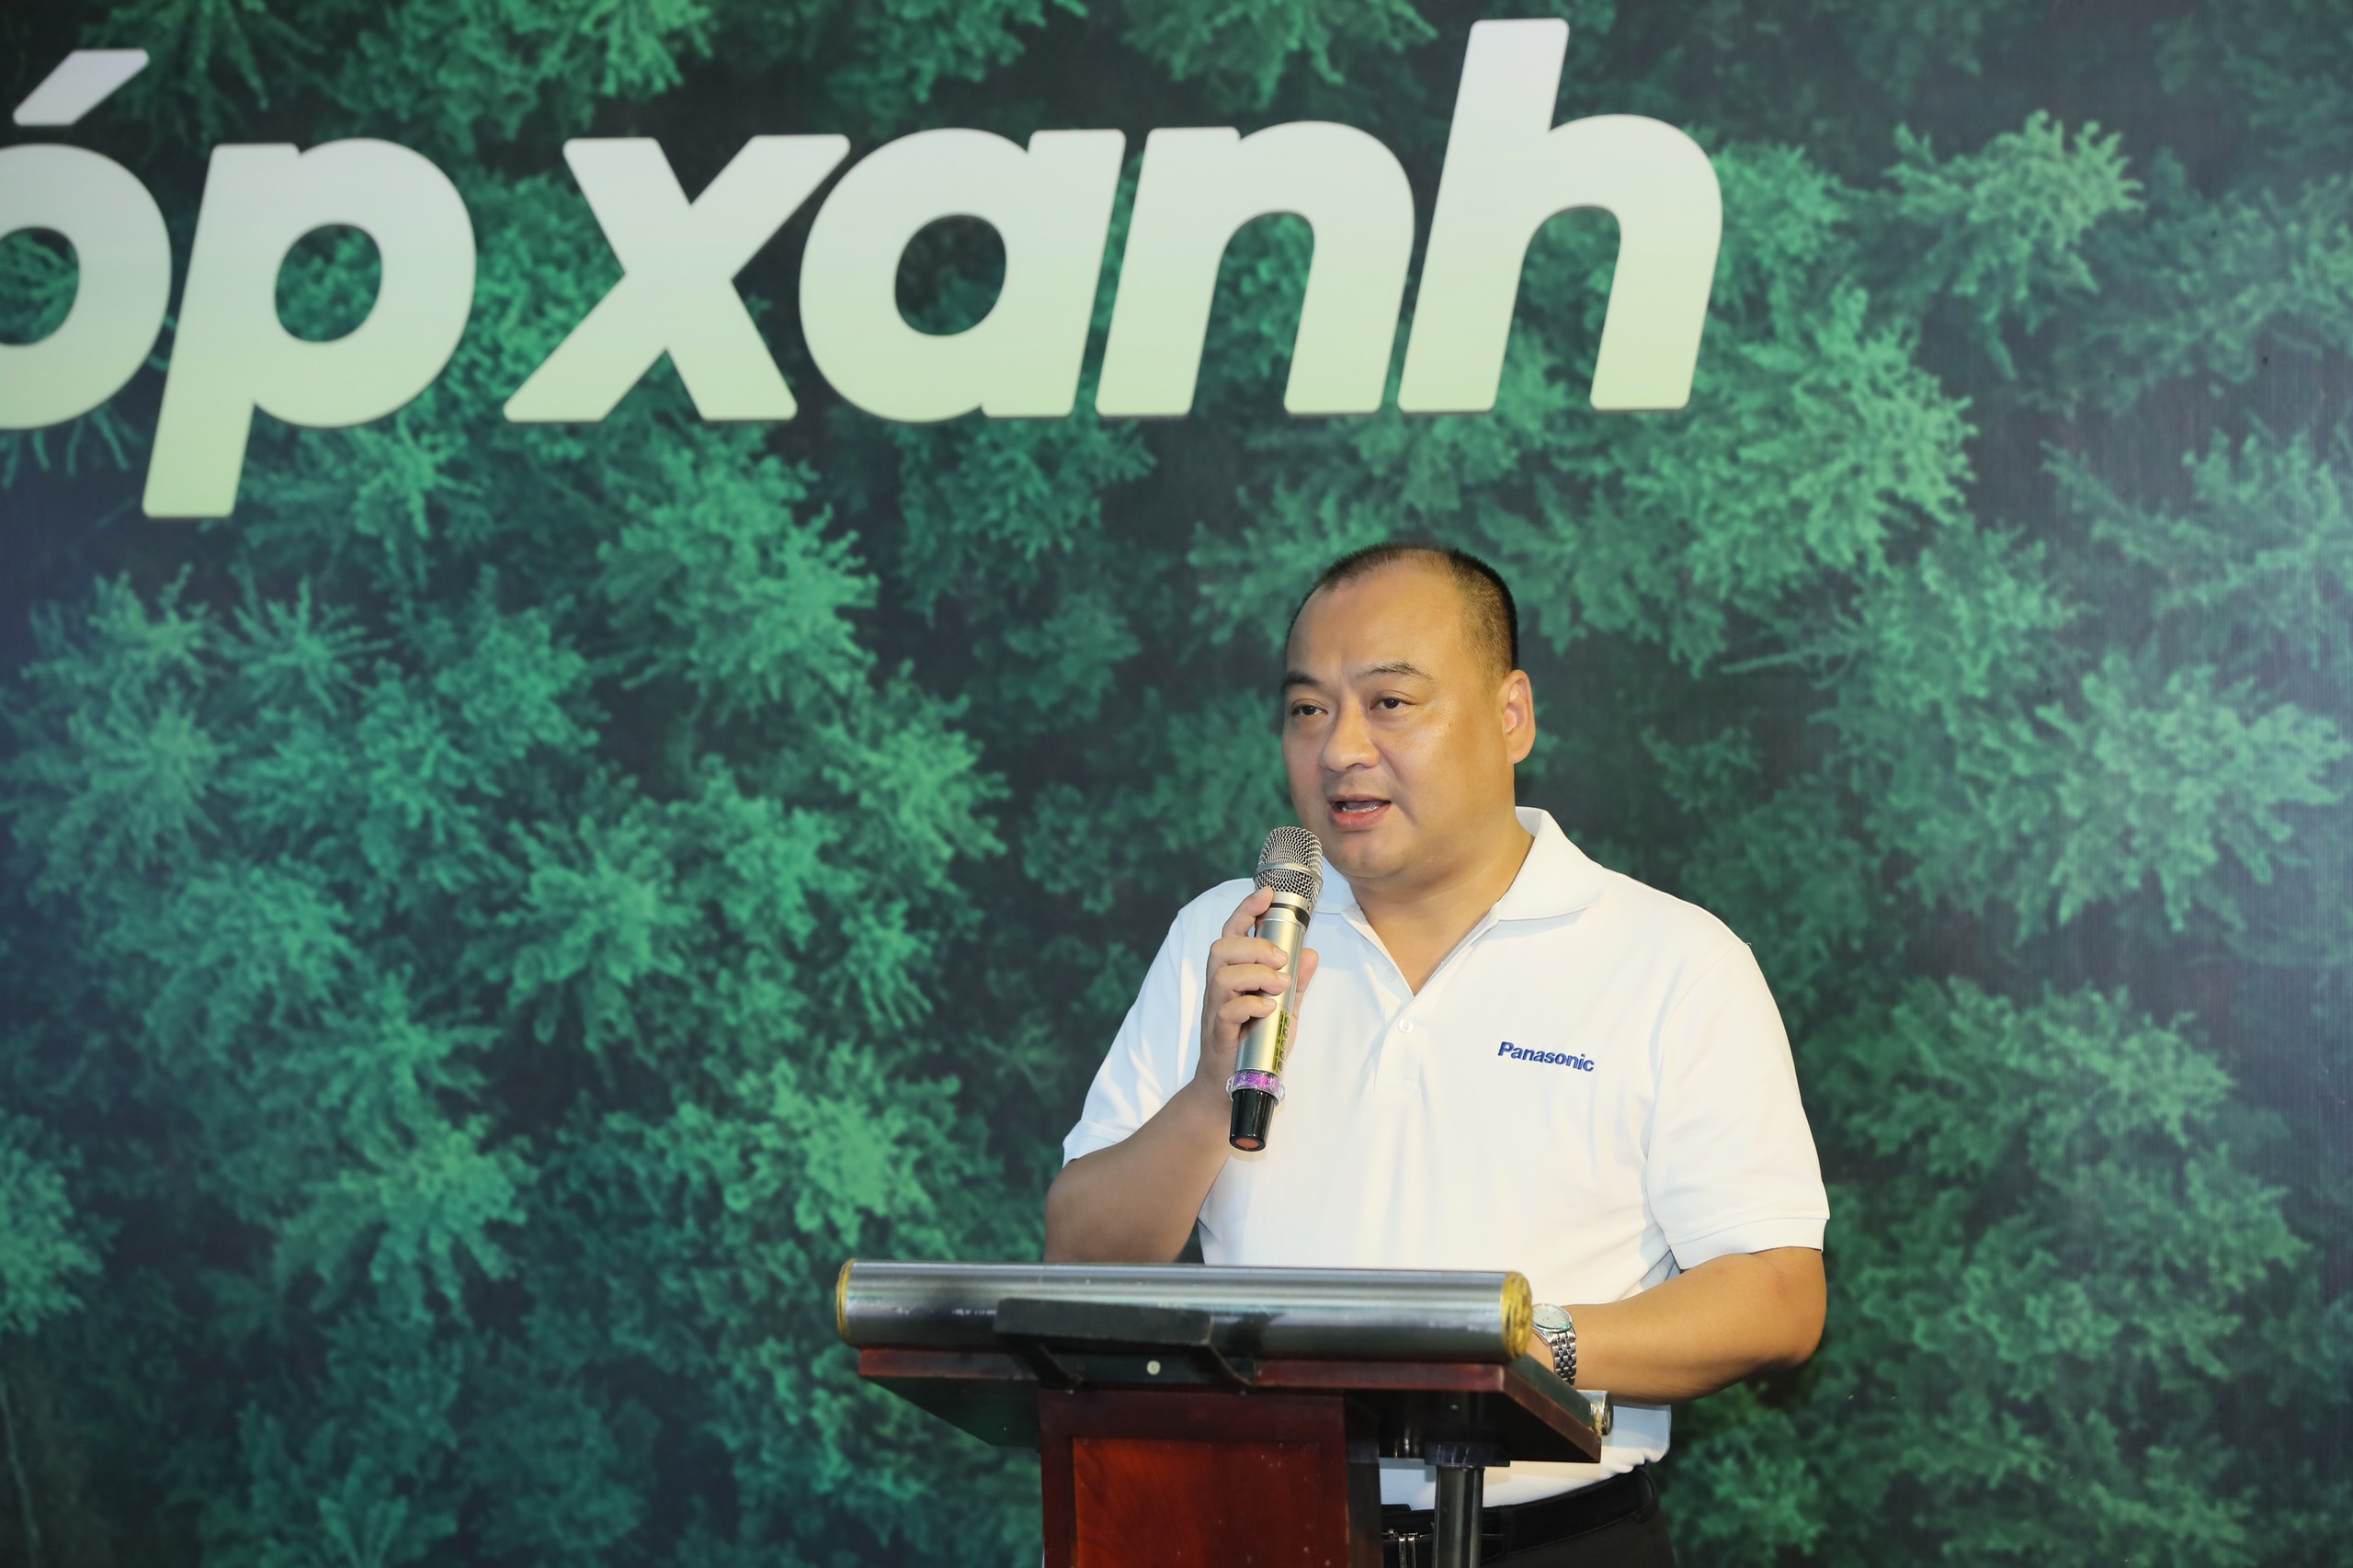 Panasonic khởi động chương trình trồng rừng “Sống khỏe góp xanh” chung sức trồng 1 tỷ cây xanh – vì một Việt Nam xanh